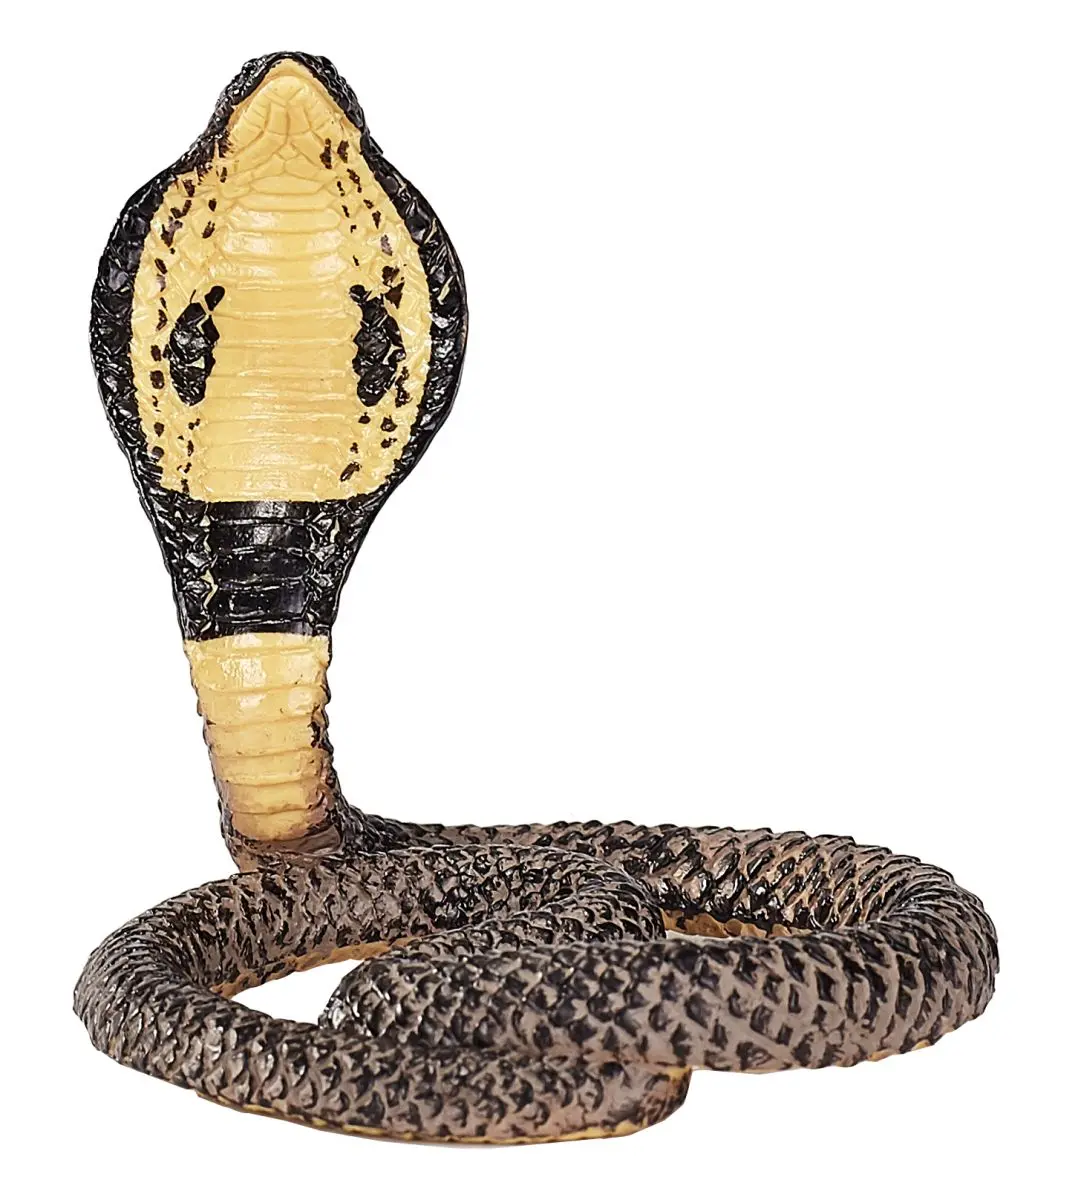 Королевская кобра - фото